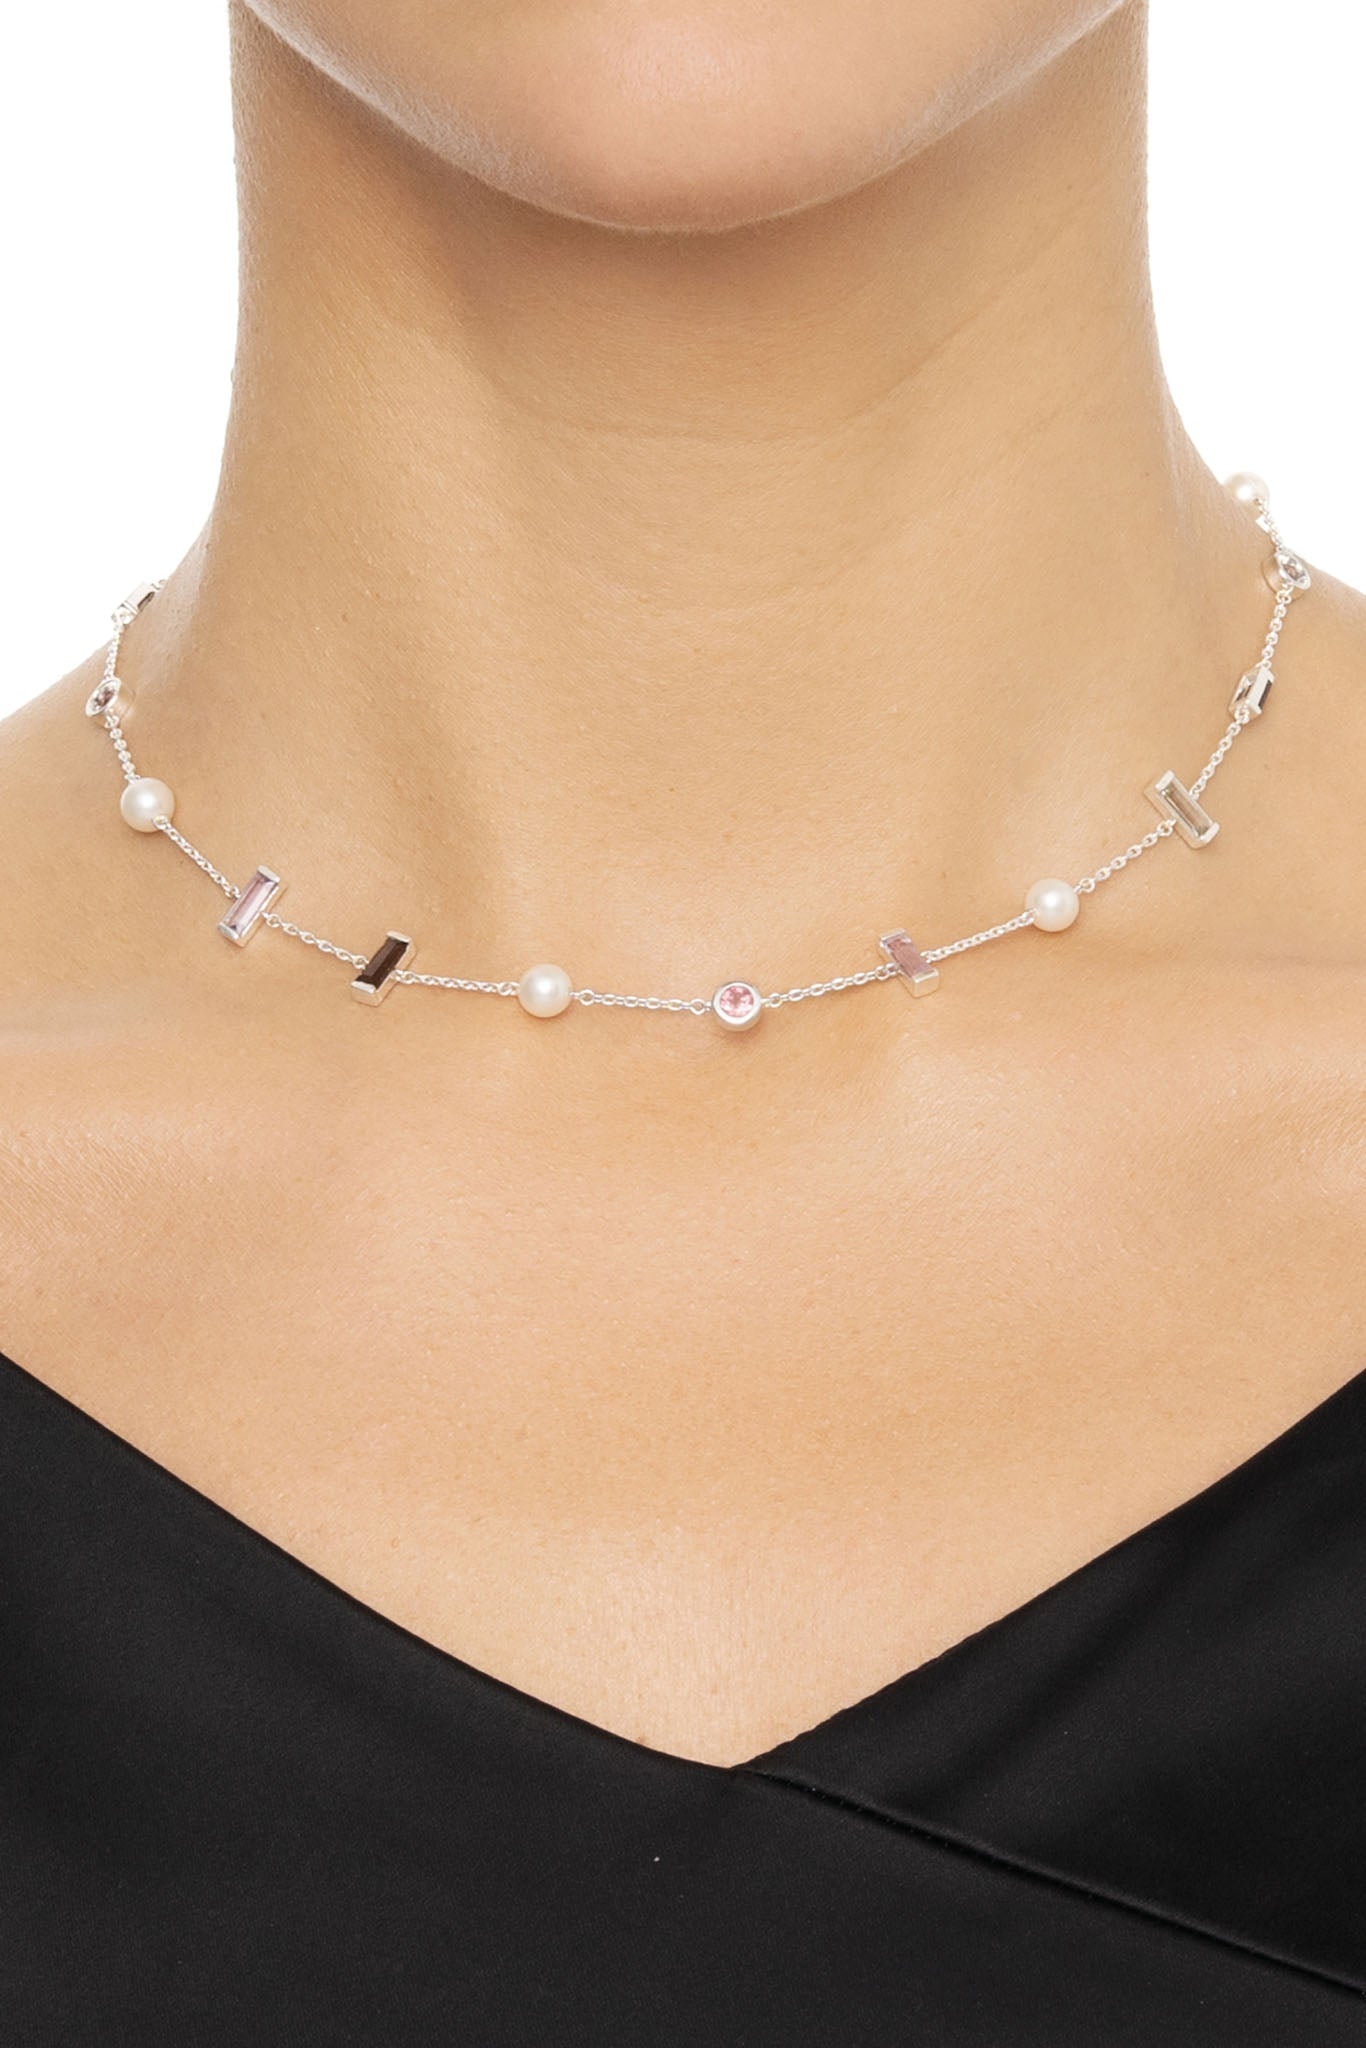 Efva Attling Dreams & Pearls Necklace hopeinen kaulakoru